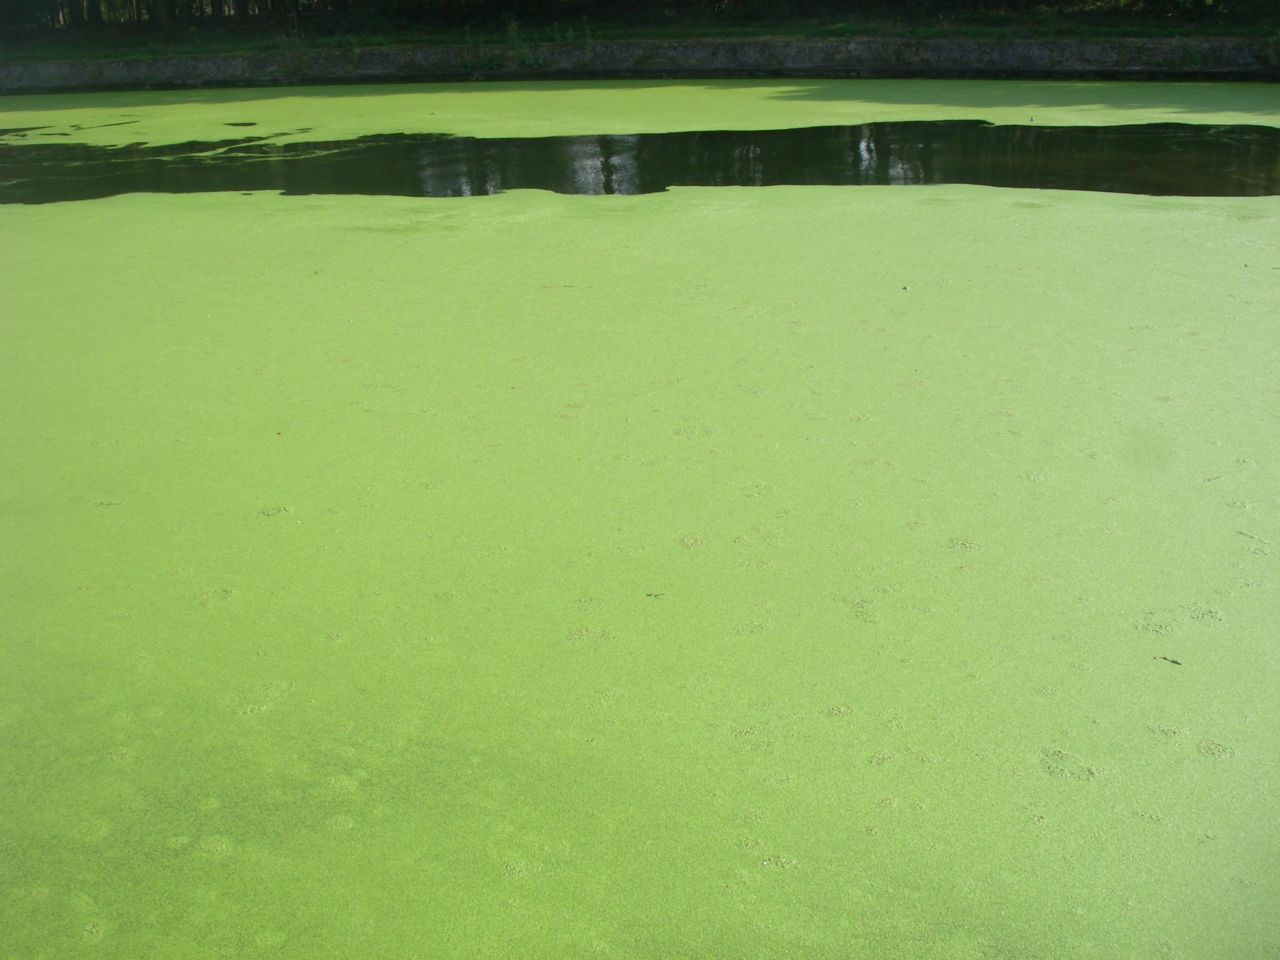 Kempische kanalen zien groen van het kroos (foto: Jos Gysels)